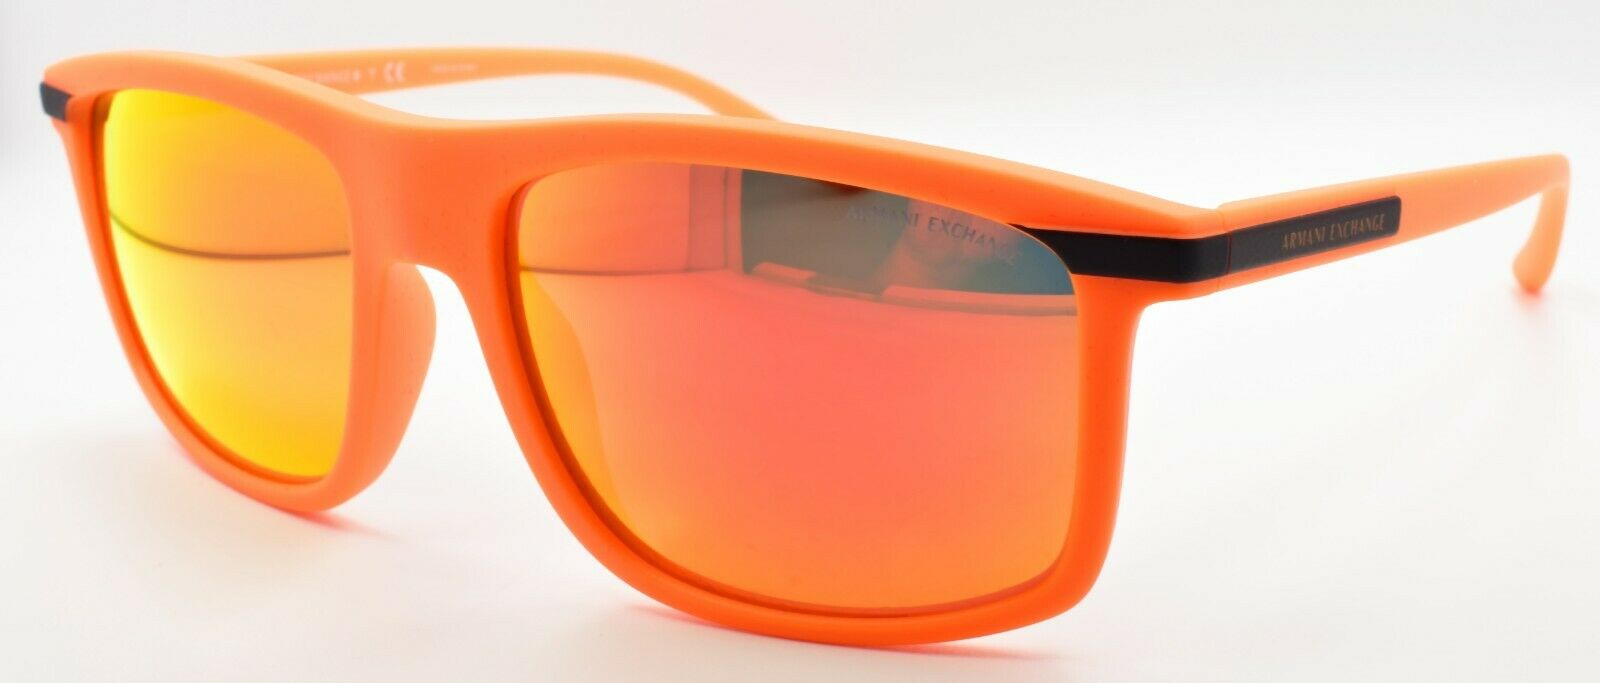 1-Armani Exchange AX4110 83306Q Sunglasses Matte Fluorescent Orange / Mirror Red-8056597419475-IKSpecs